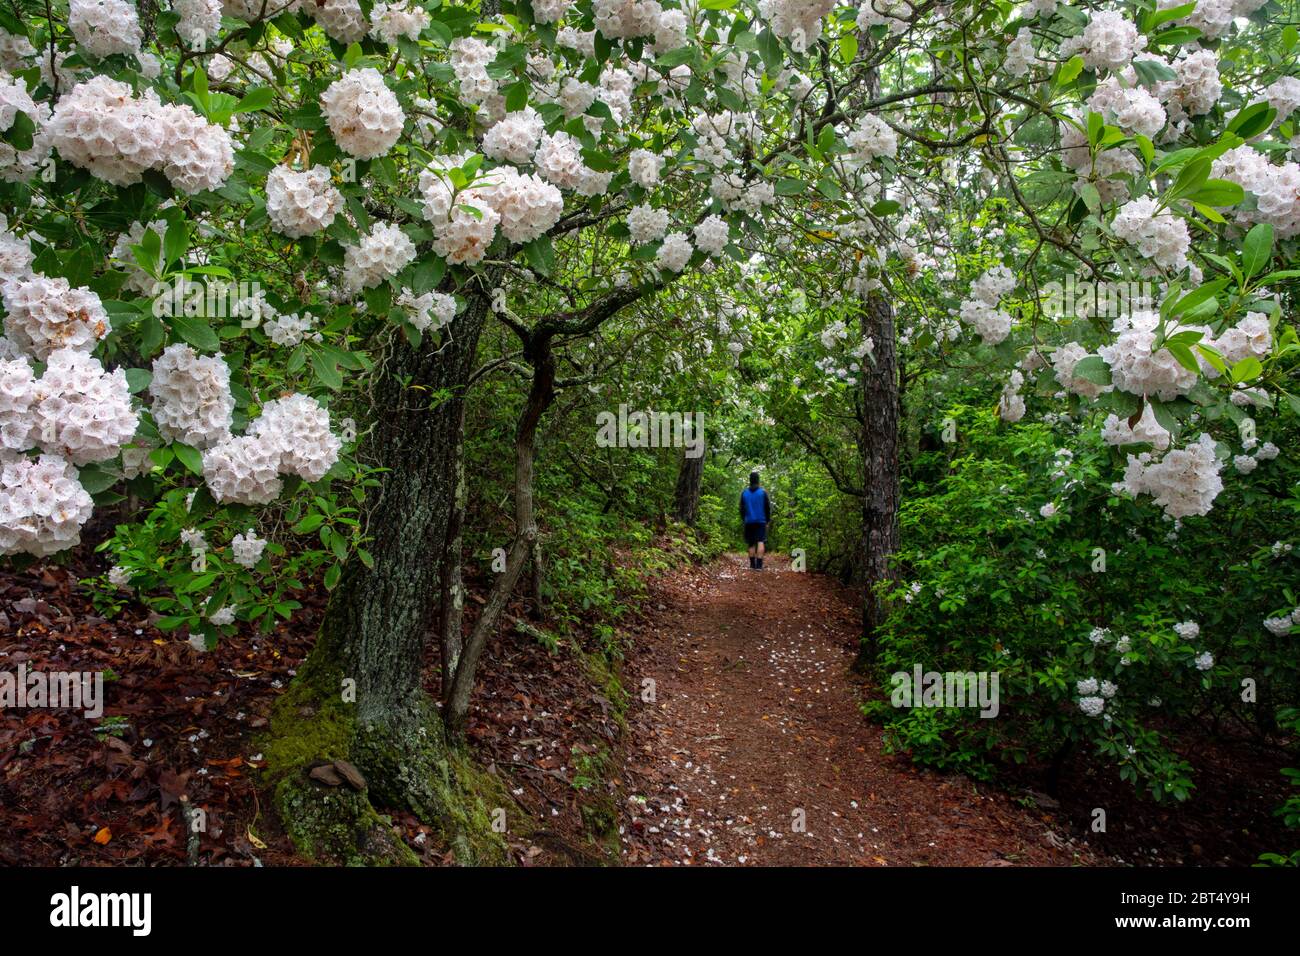 Randonnée sur la piste avec la montagne Laurel (Kalmia latifolia) en fleur - Pisgah National Forest, Brevard, Caroline du Nord, Etats-Unis Banque D'Images